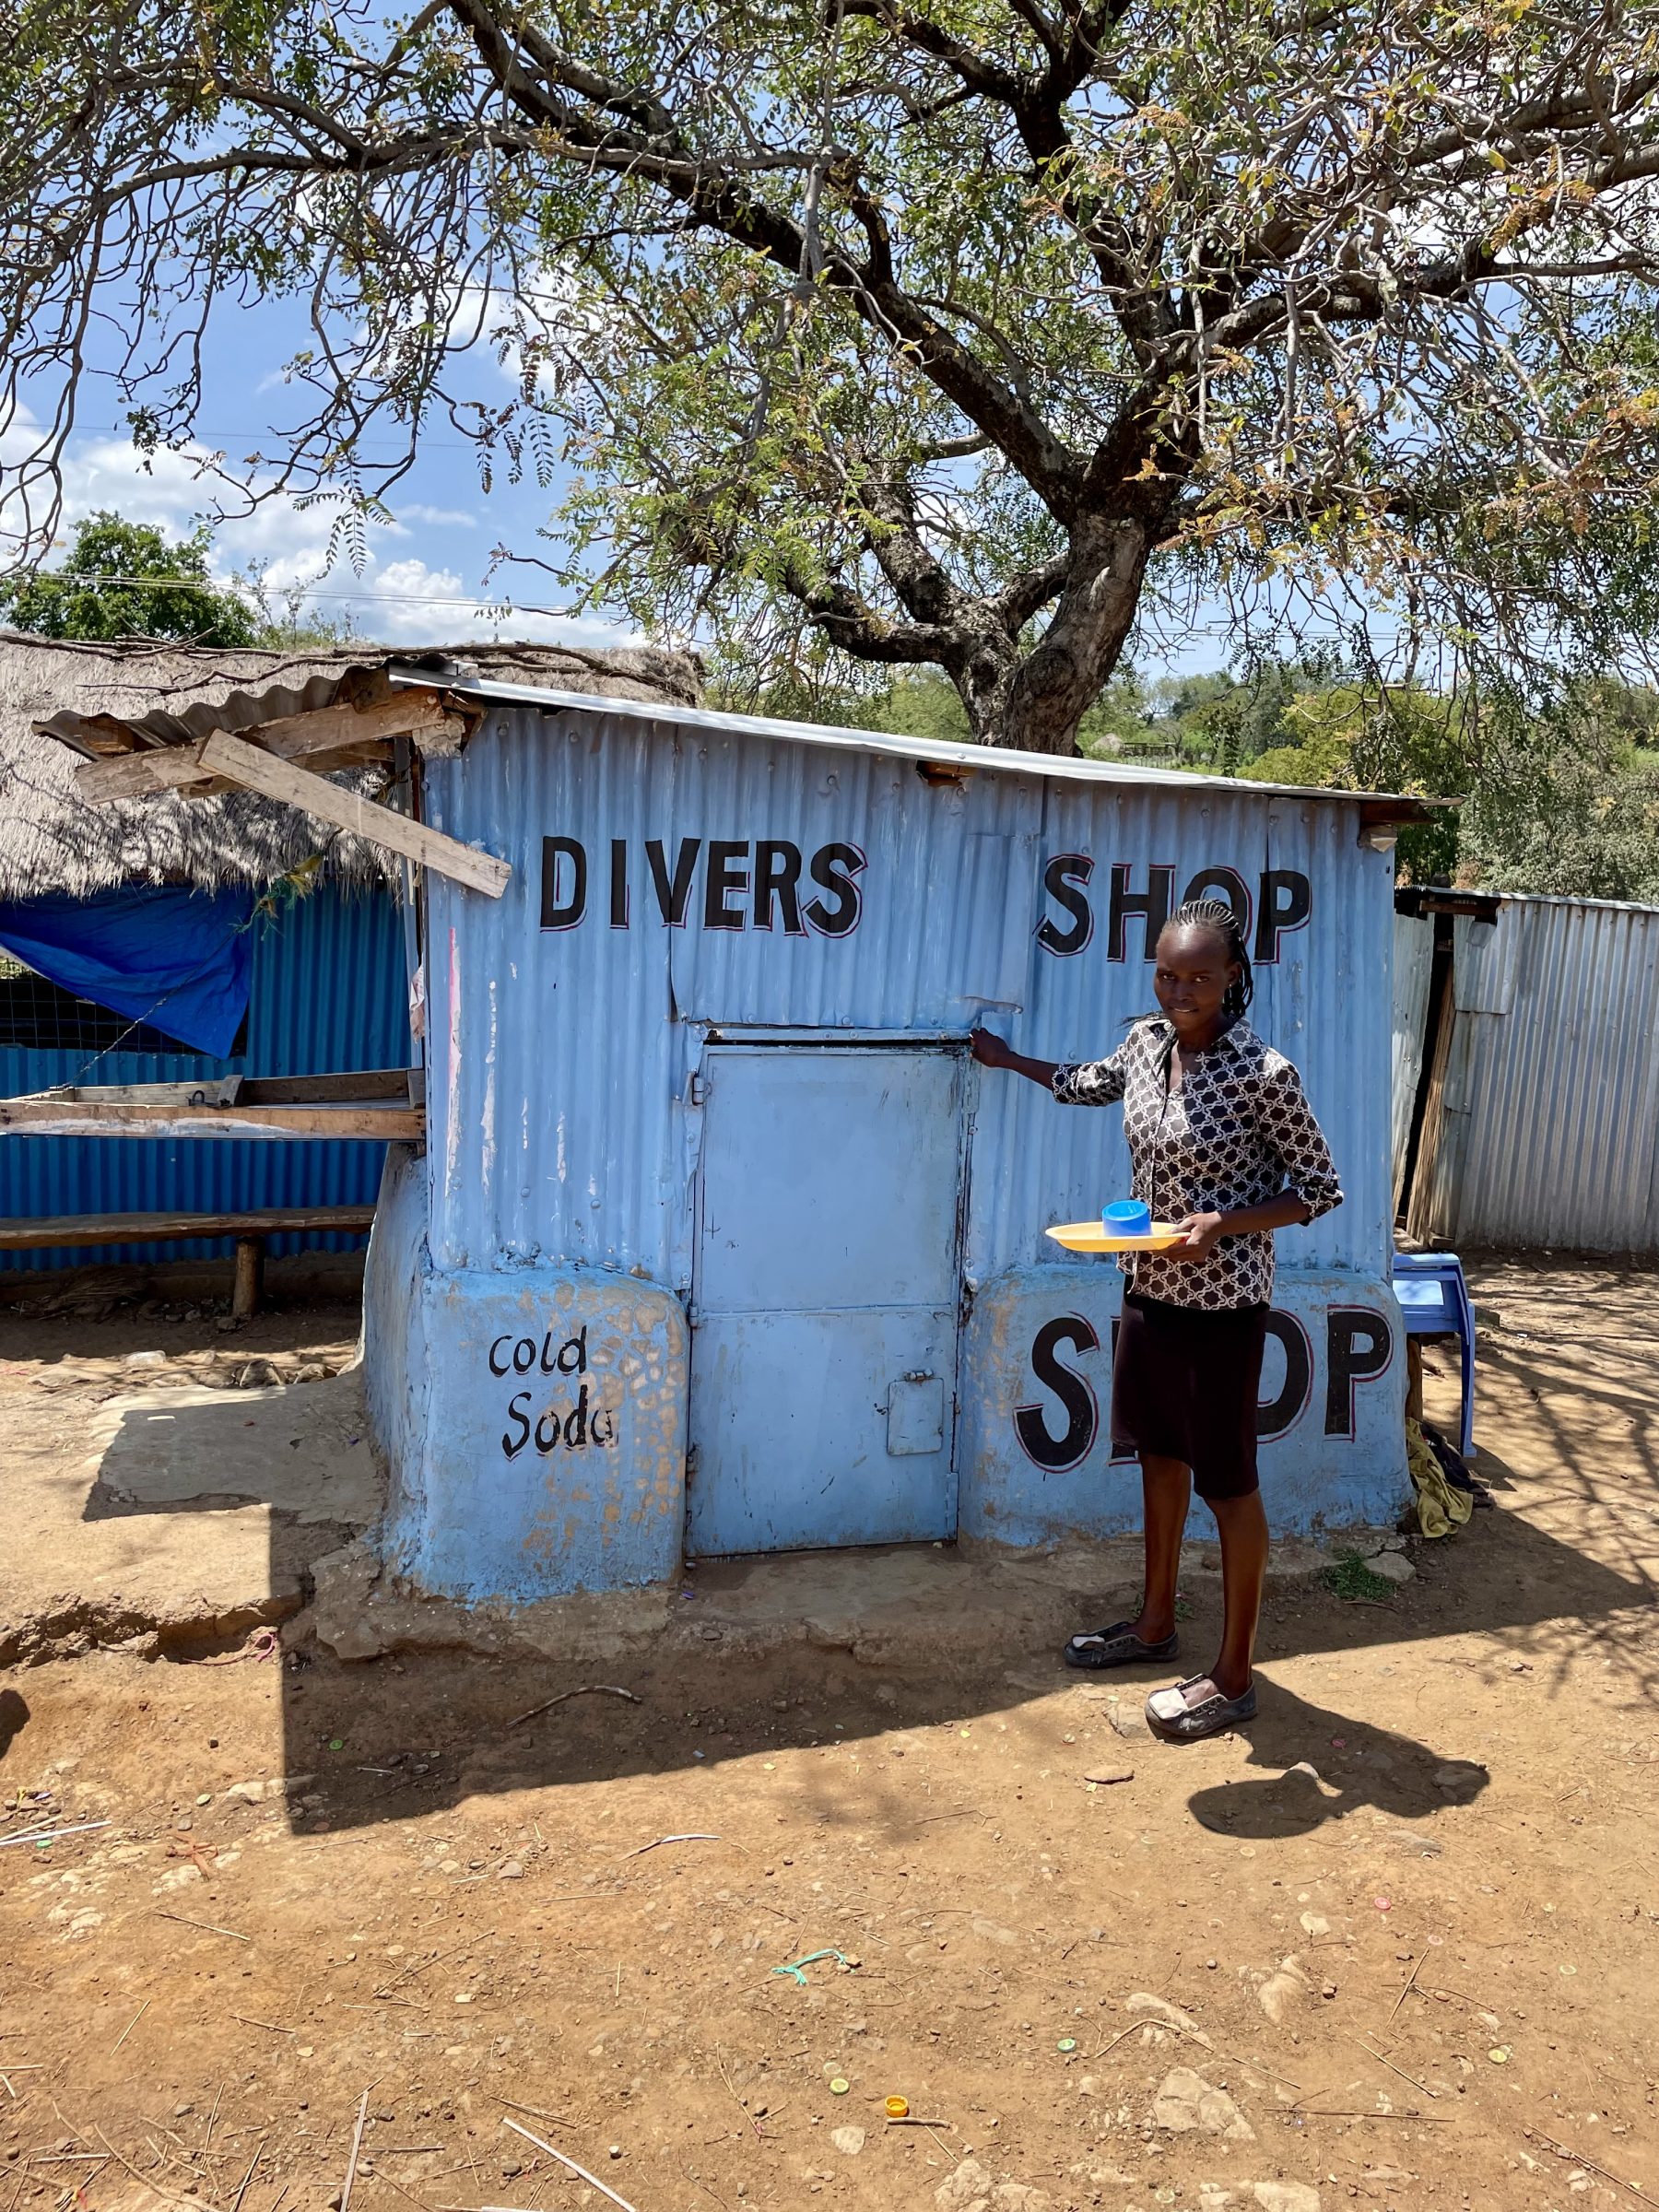 De Divers Shop van de Kerio Divers is gesloten